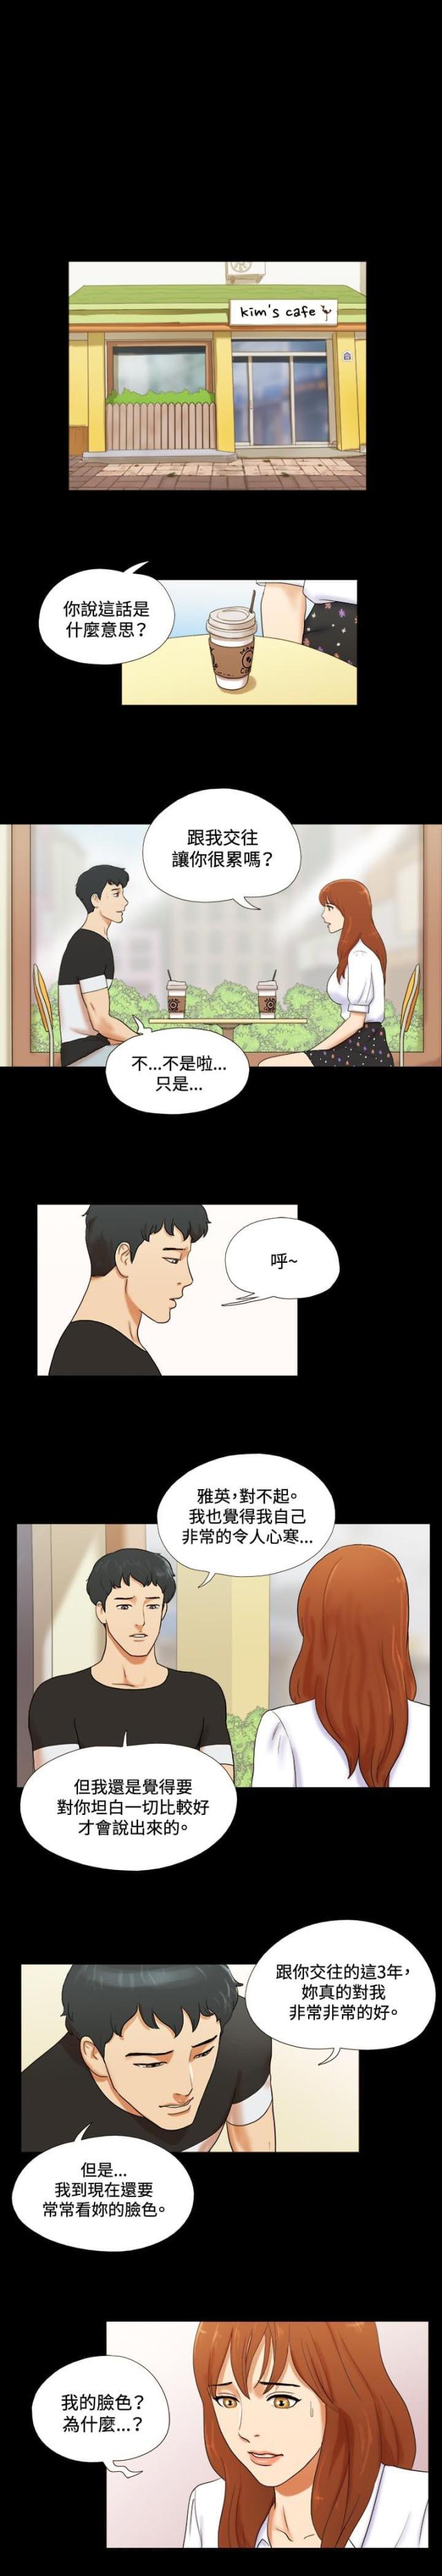 情侣游戏​韩国伦理漫画无遮羞资源